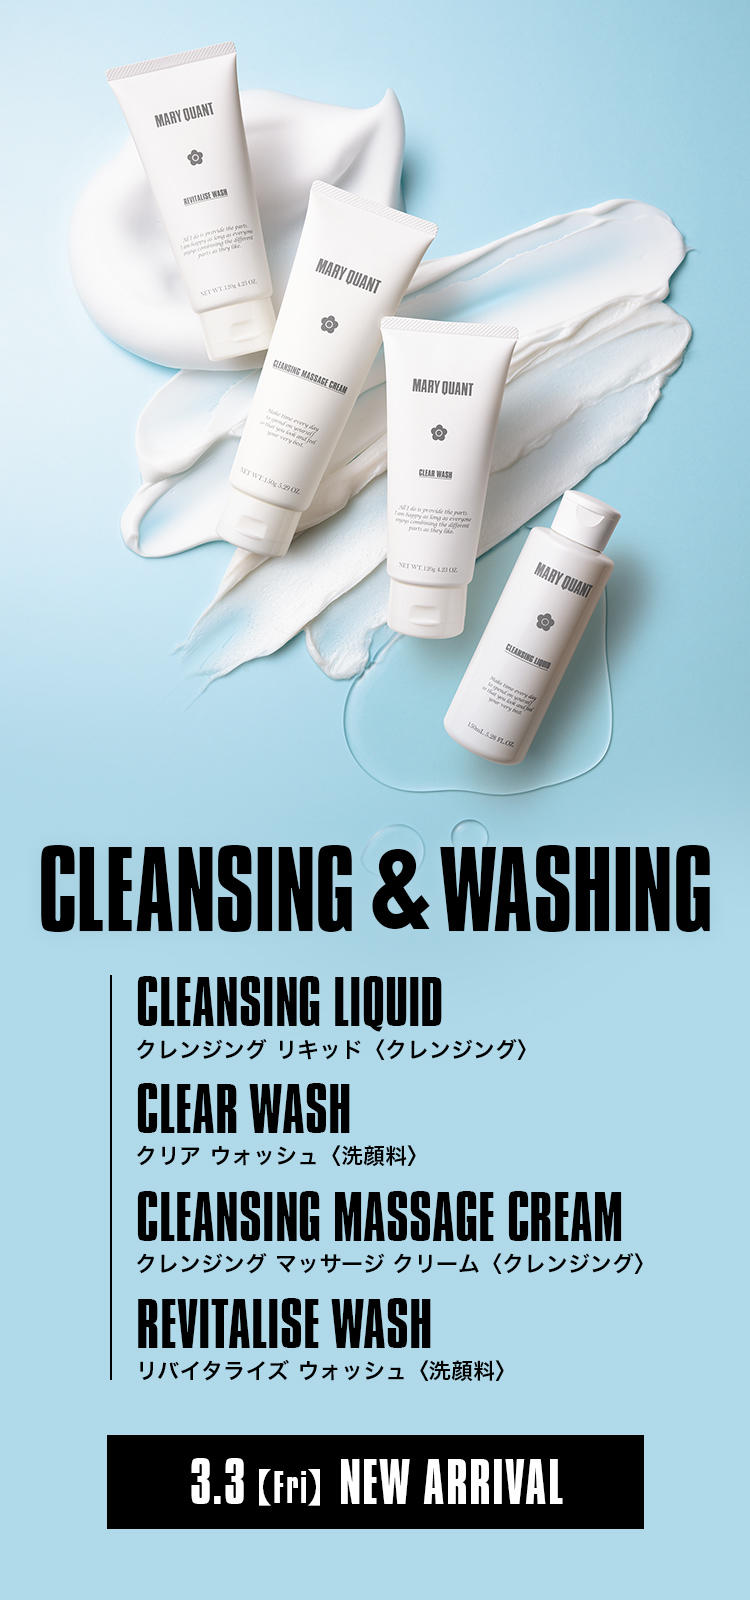 CLEANSING & WASHING